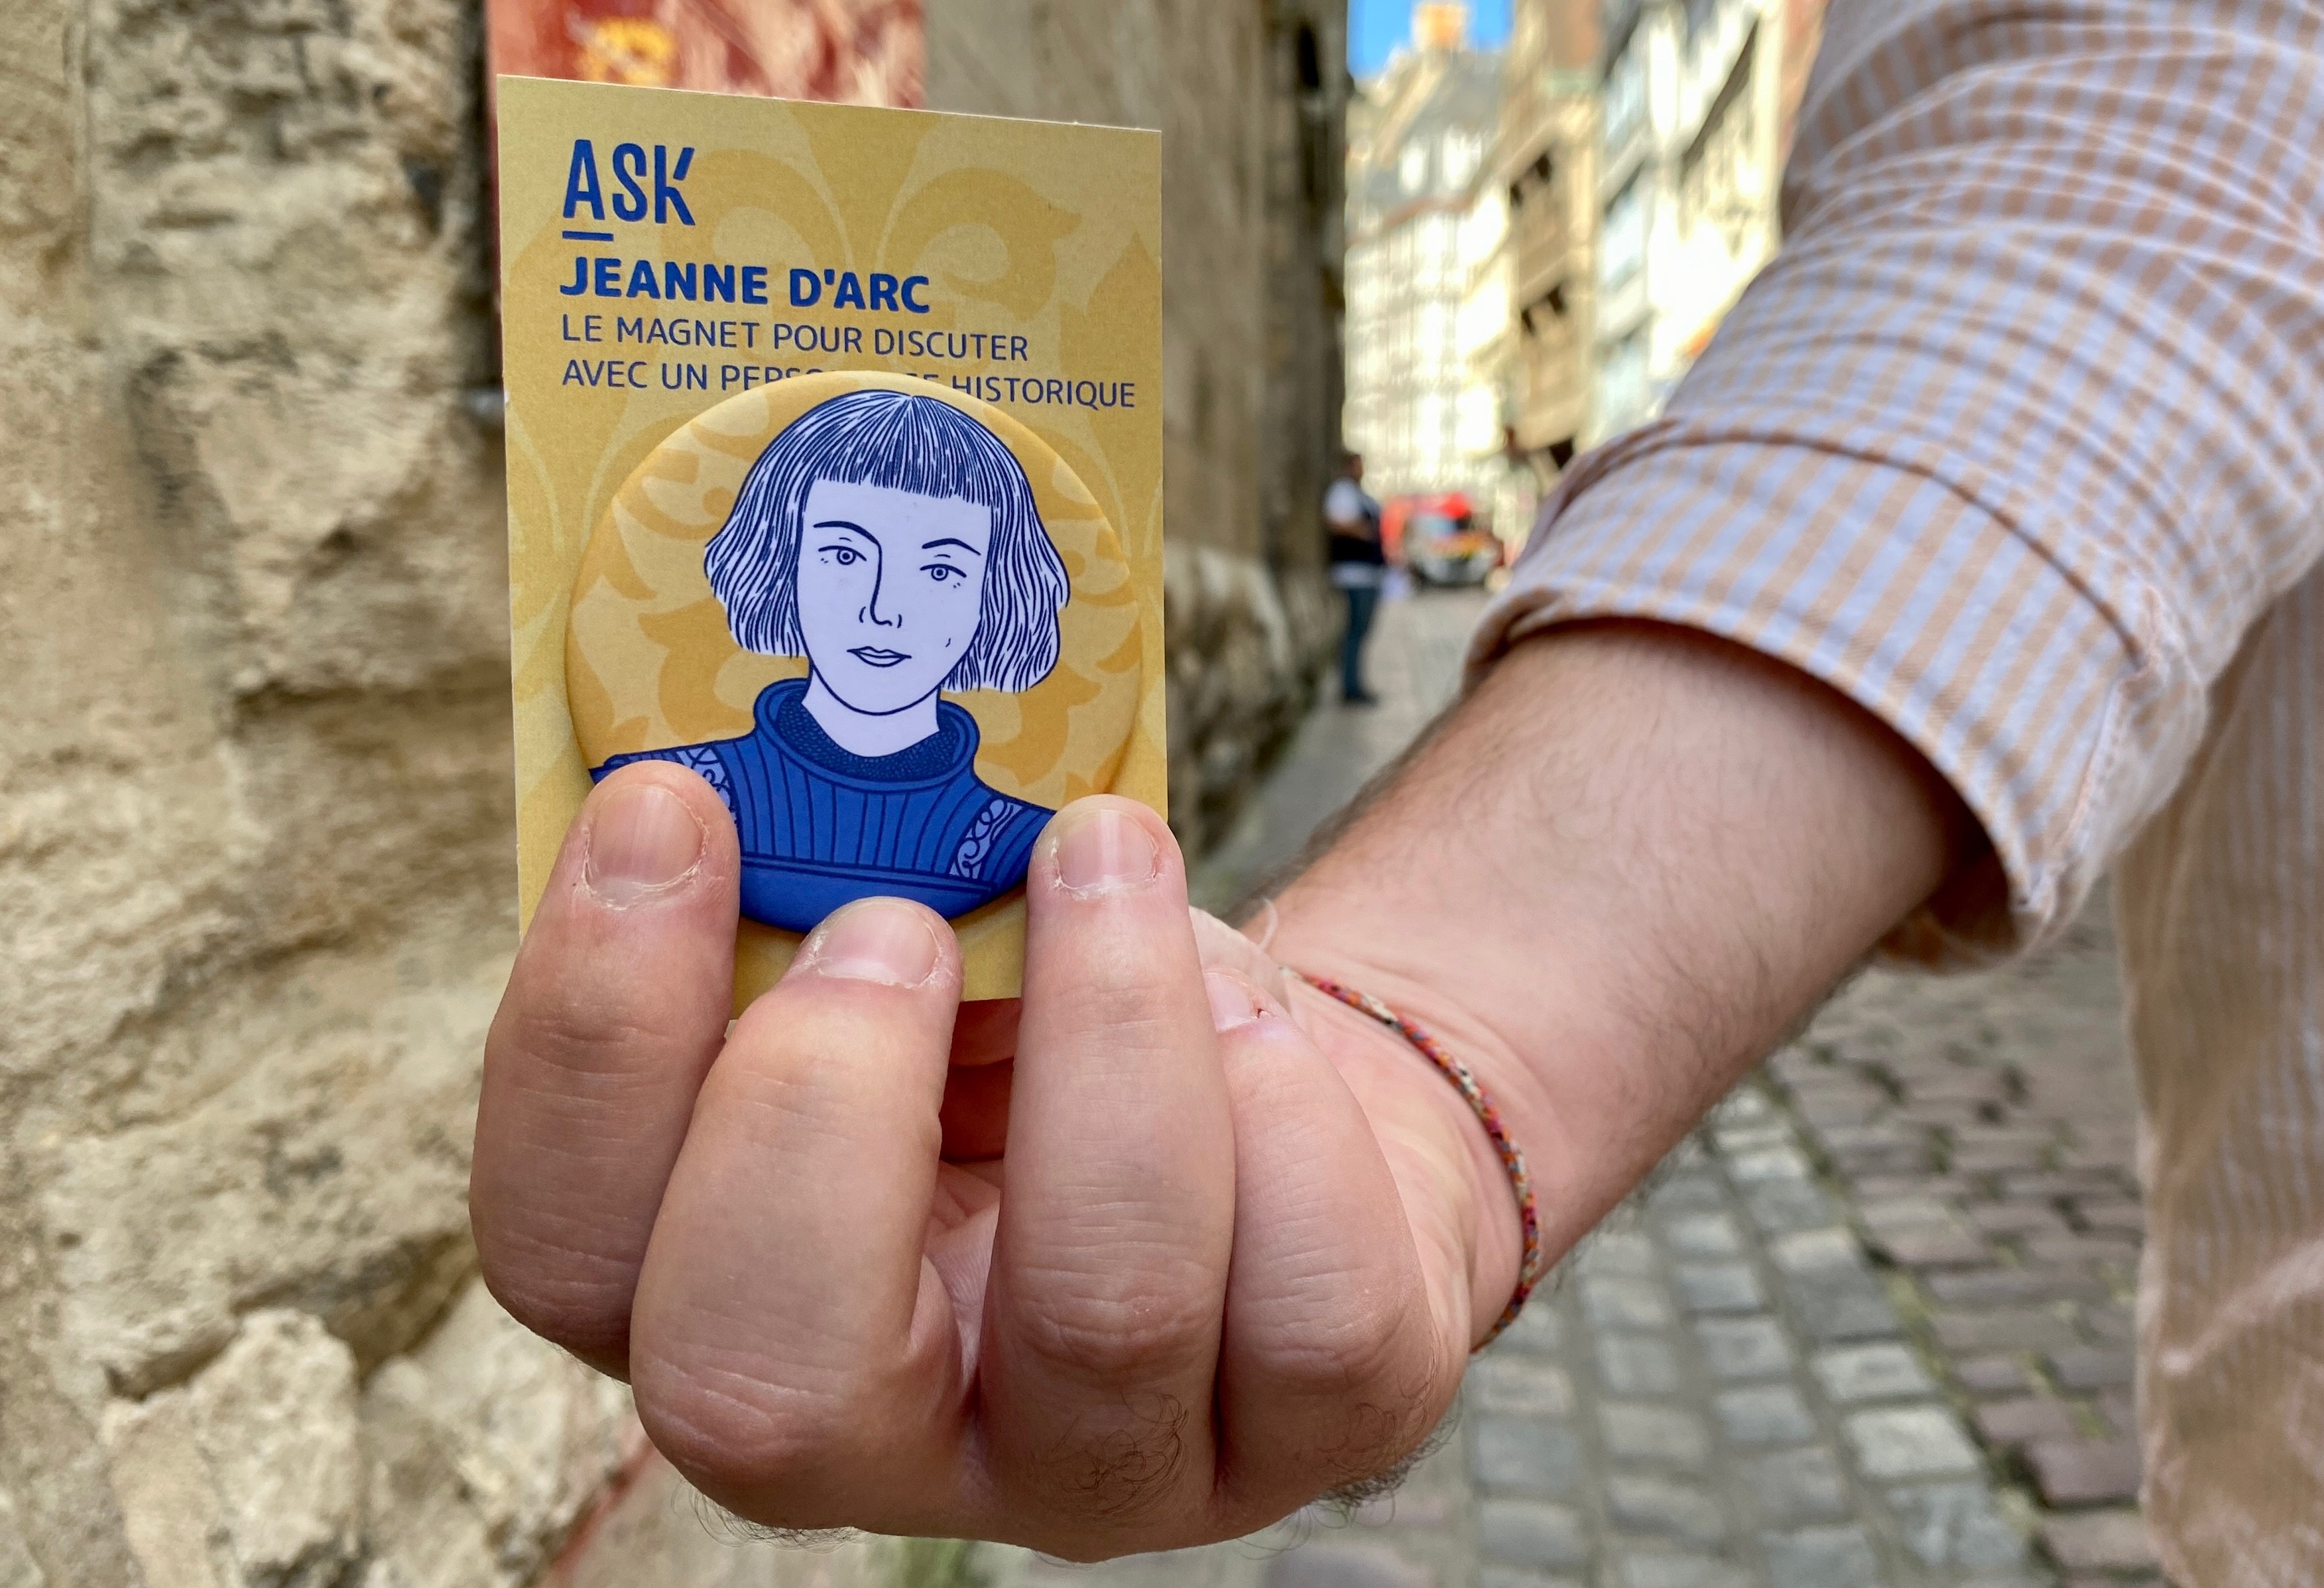 Disponible depuis le week-end des Journées du patrimoine, le magnet Ask Jeanne-d'Arc est disponible à Rouen (Seine-Maritime), à l'Historial, mais aussi à l'Aître Saint-Maclou. LP/Laurent Derouet